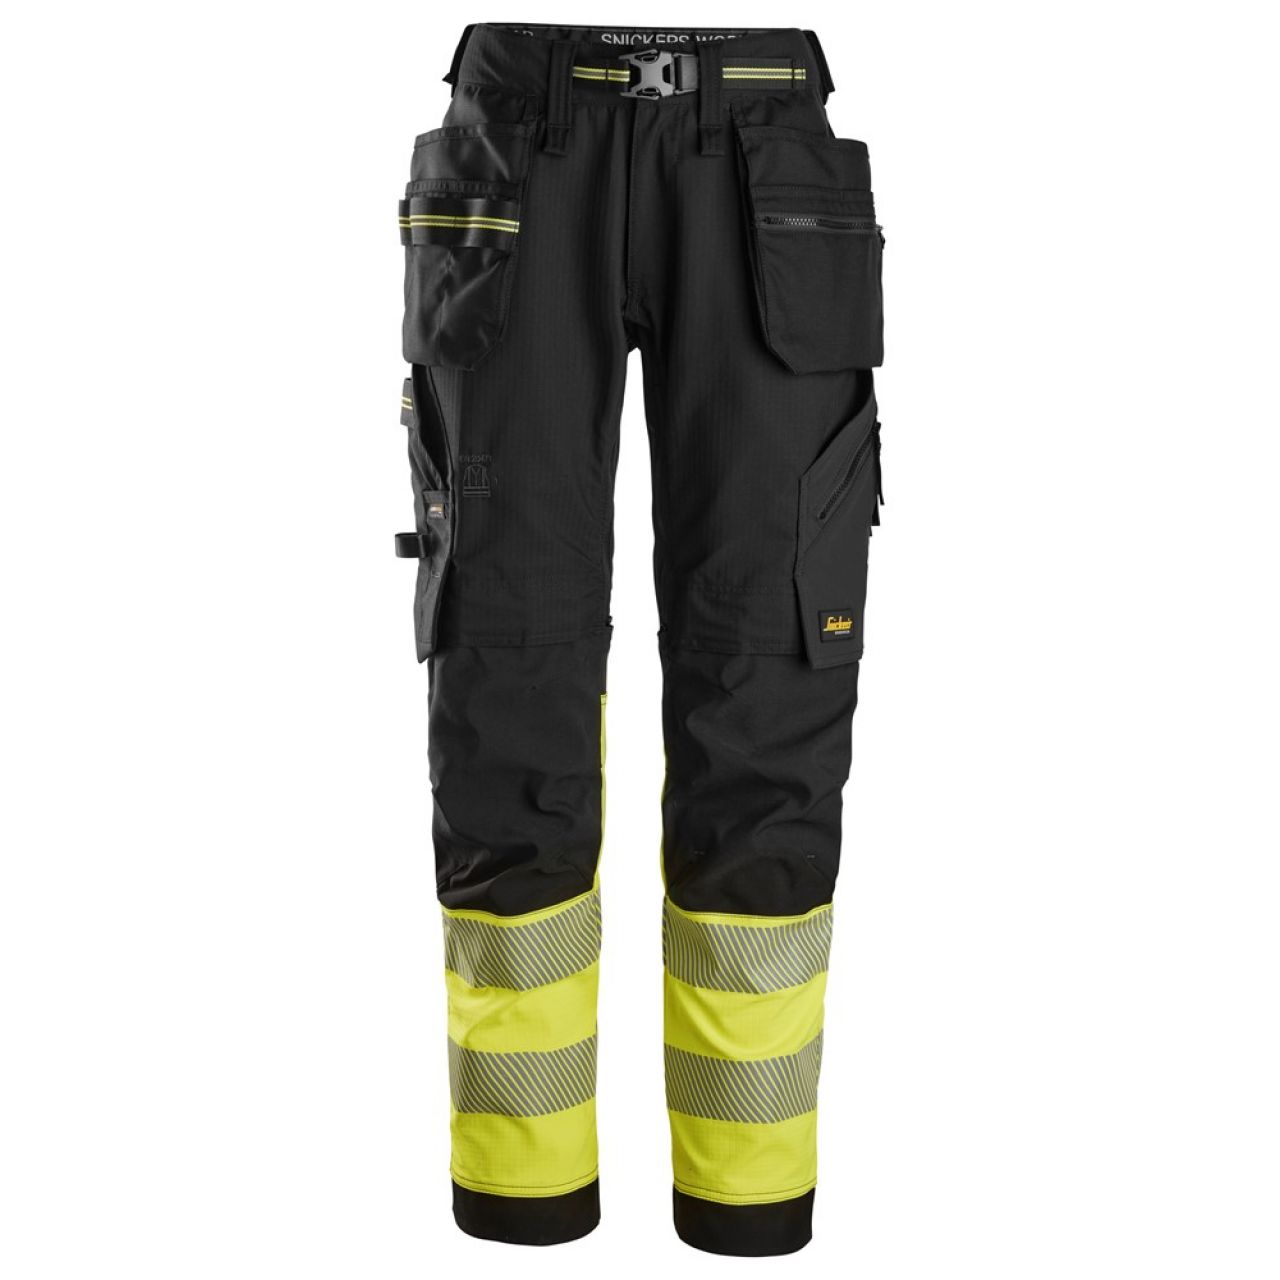 6934 Pantalones largos de trabajo elásticos de alta visibilidad clase 1 con bolsillos flotantes negro-amarillo talla 254